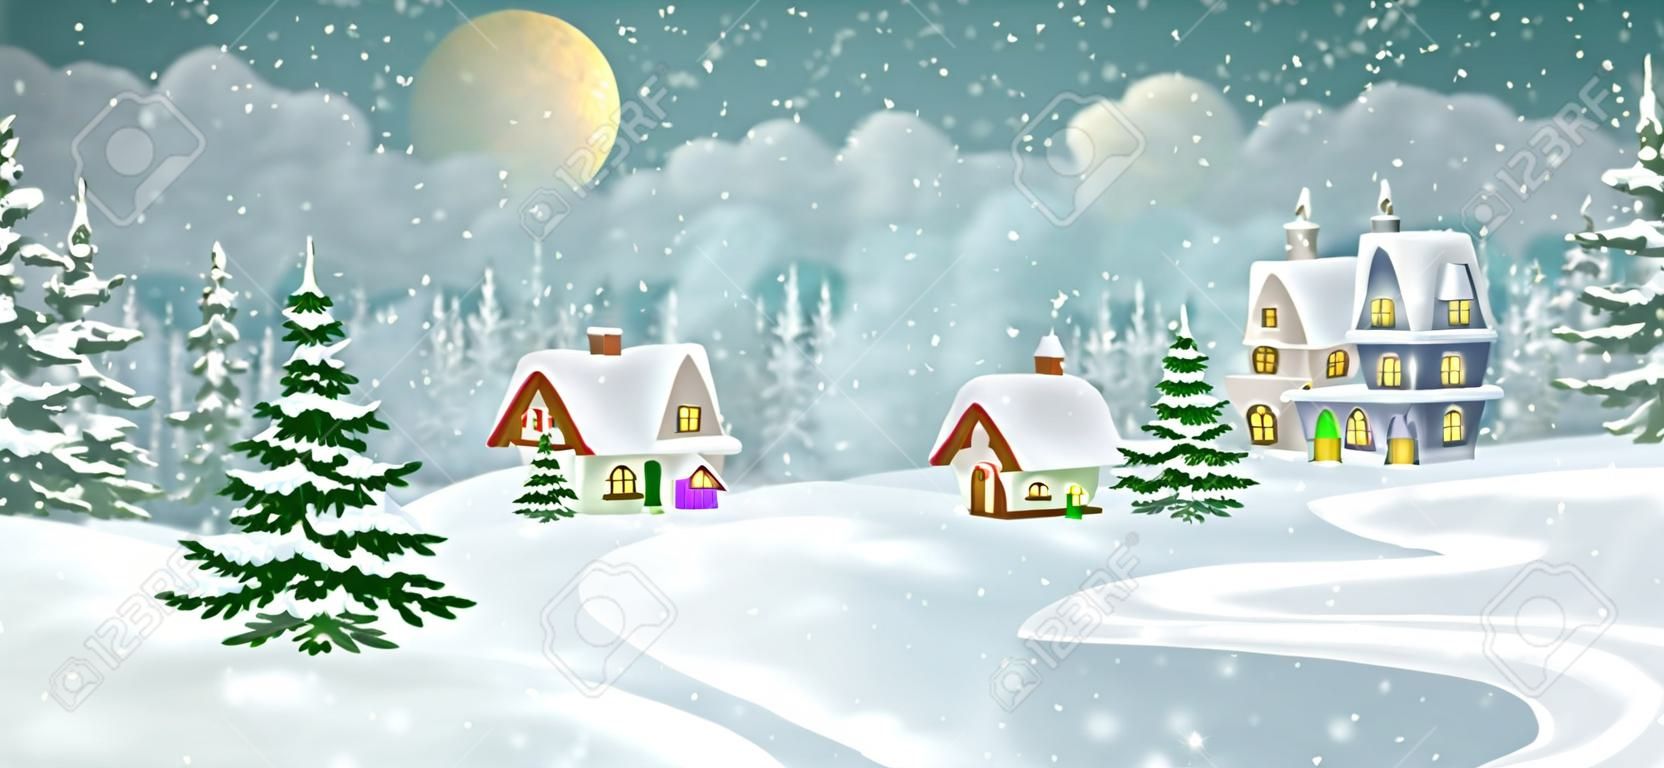 Paisagem da aldeia de inverno com floresta de pinheiros. Pequenas casas de conto de fadas cobertas de neve.